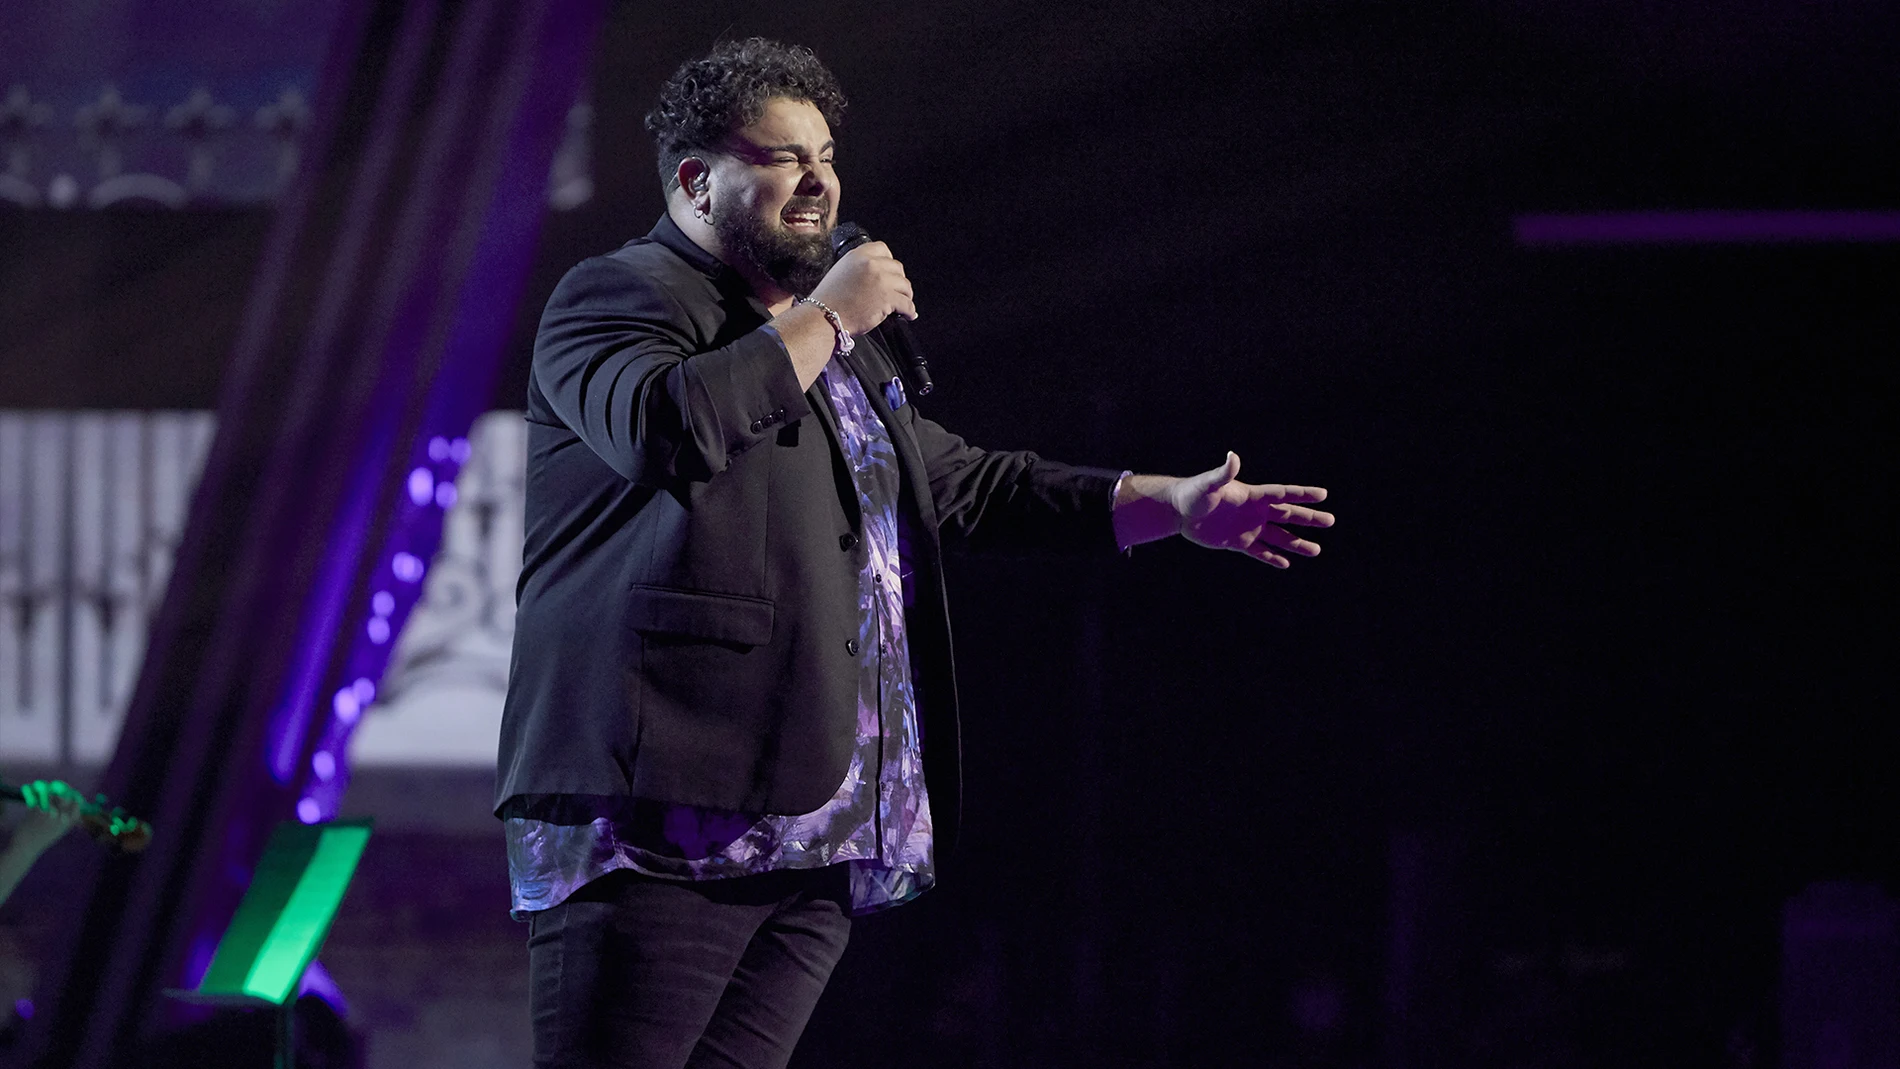 Rafael Ruiz canta 'El trato' en la Semifinal de 'La Voz'